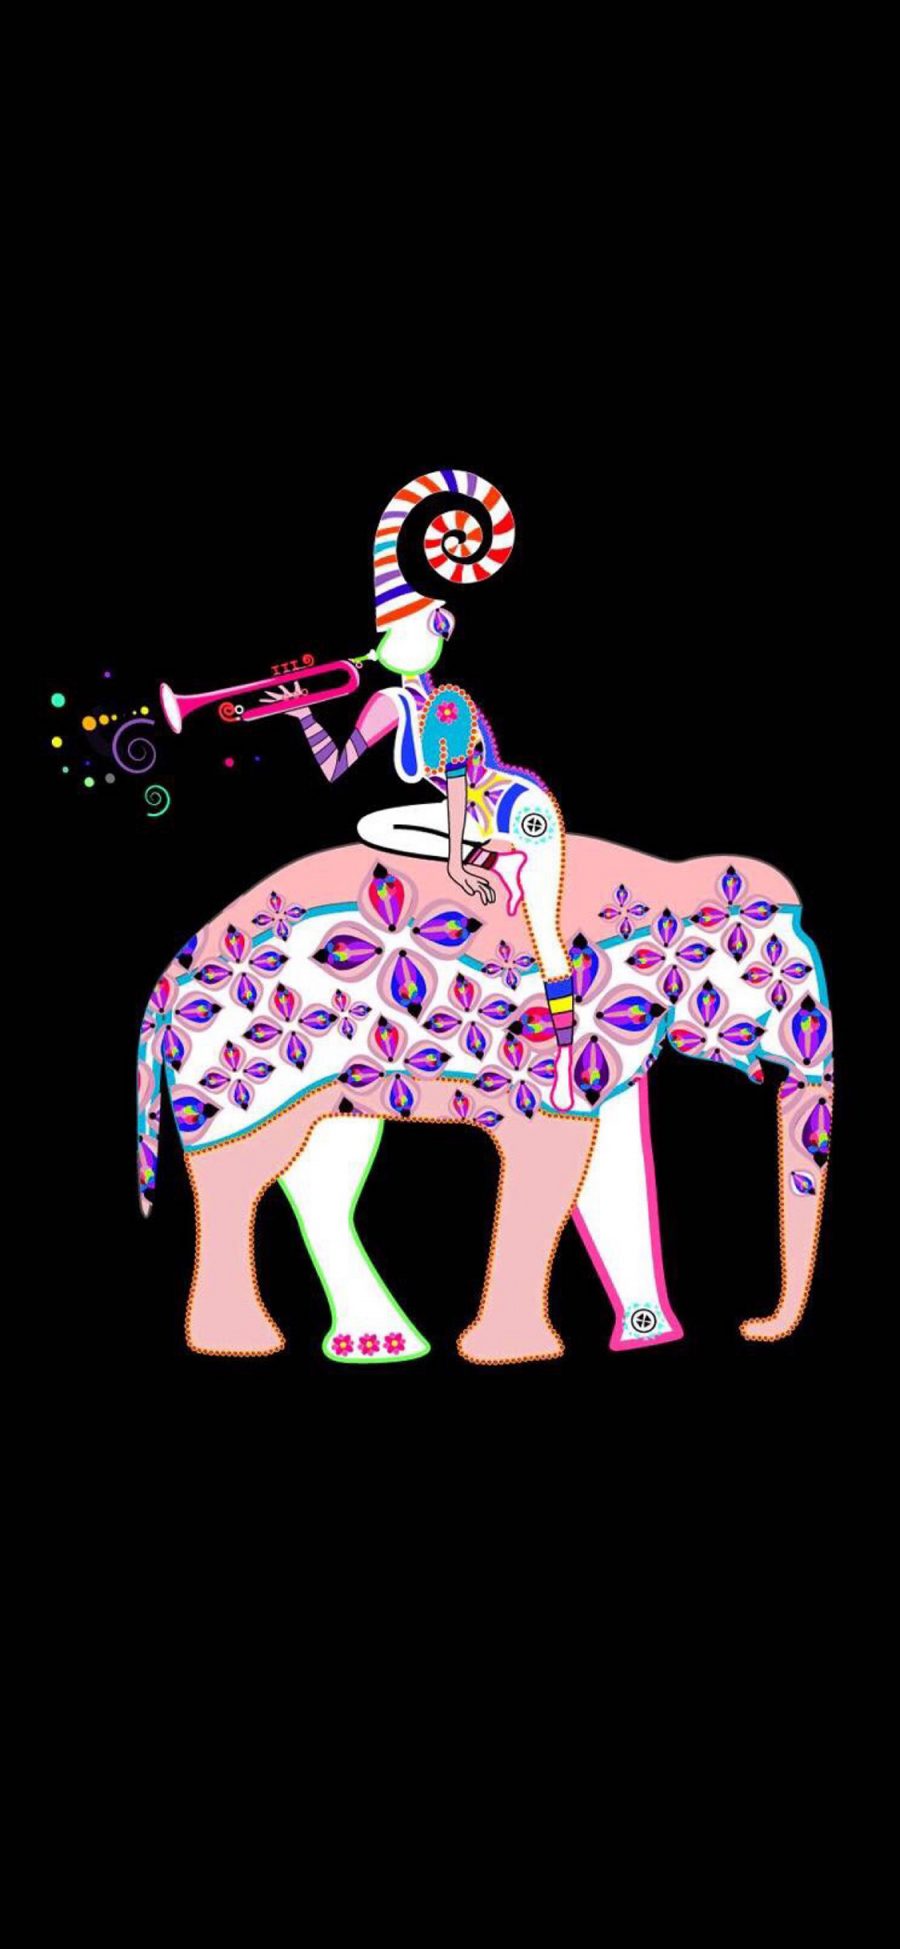 [2436×1125]卡通 插图 马戏团 色彩 大象 苹果手机动漫壁纸图片